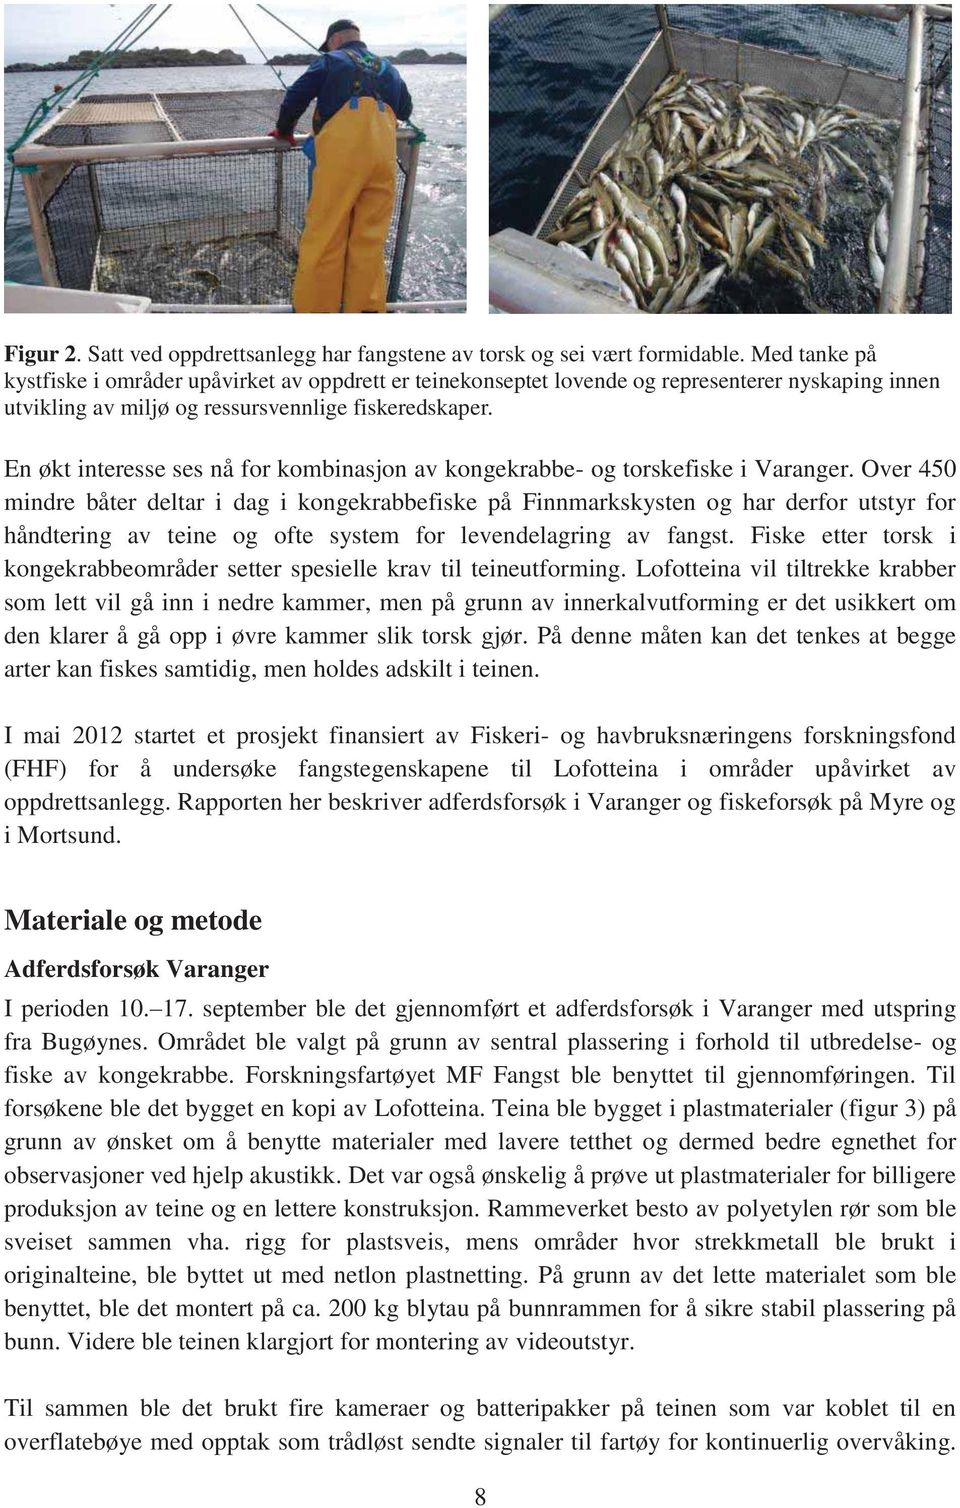 En økt interesse ses nå for kombinasjon av kongekrabbe- og torskefiske i Varanger.